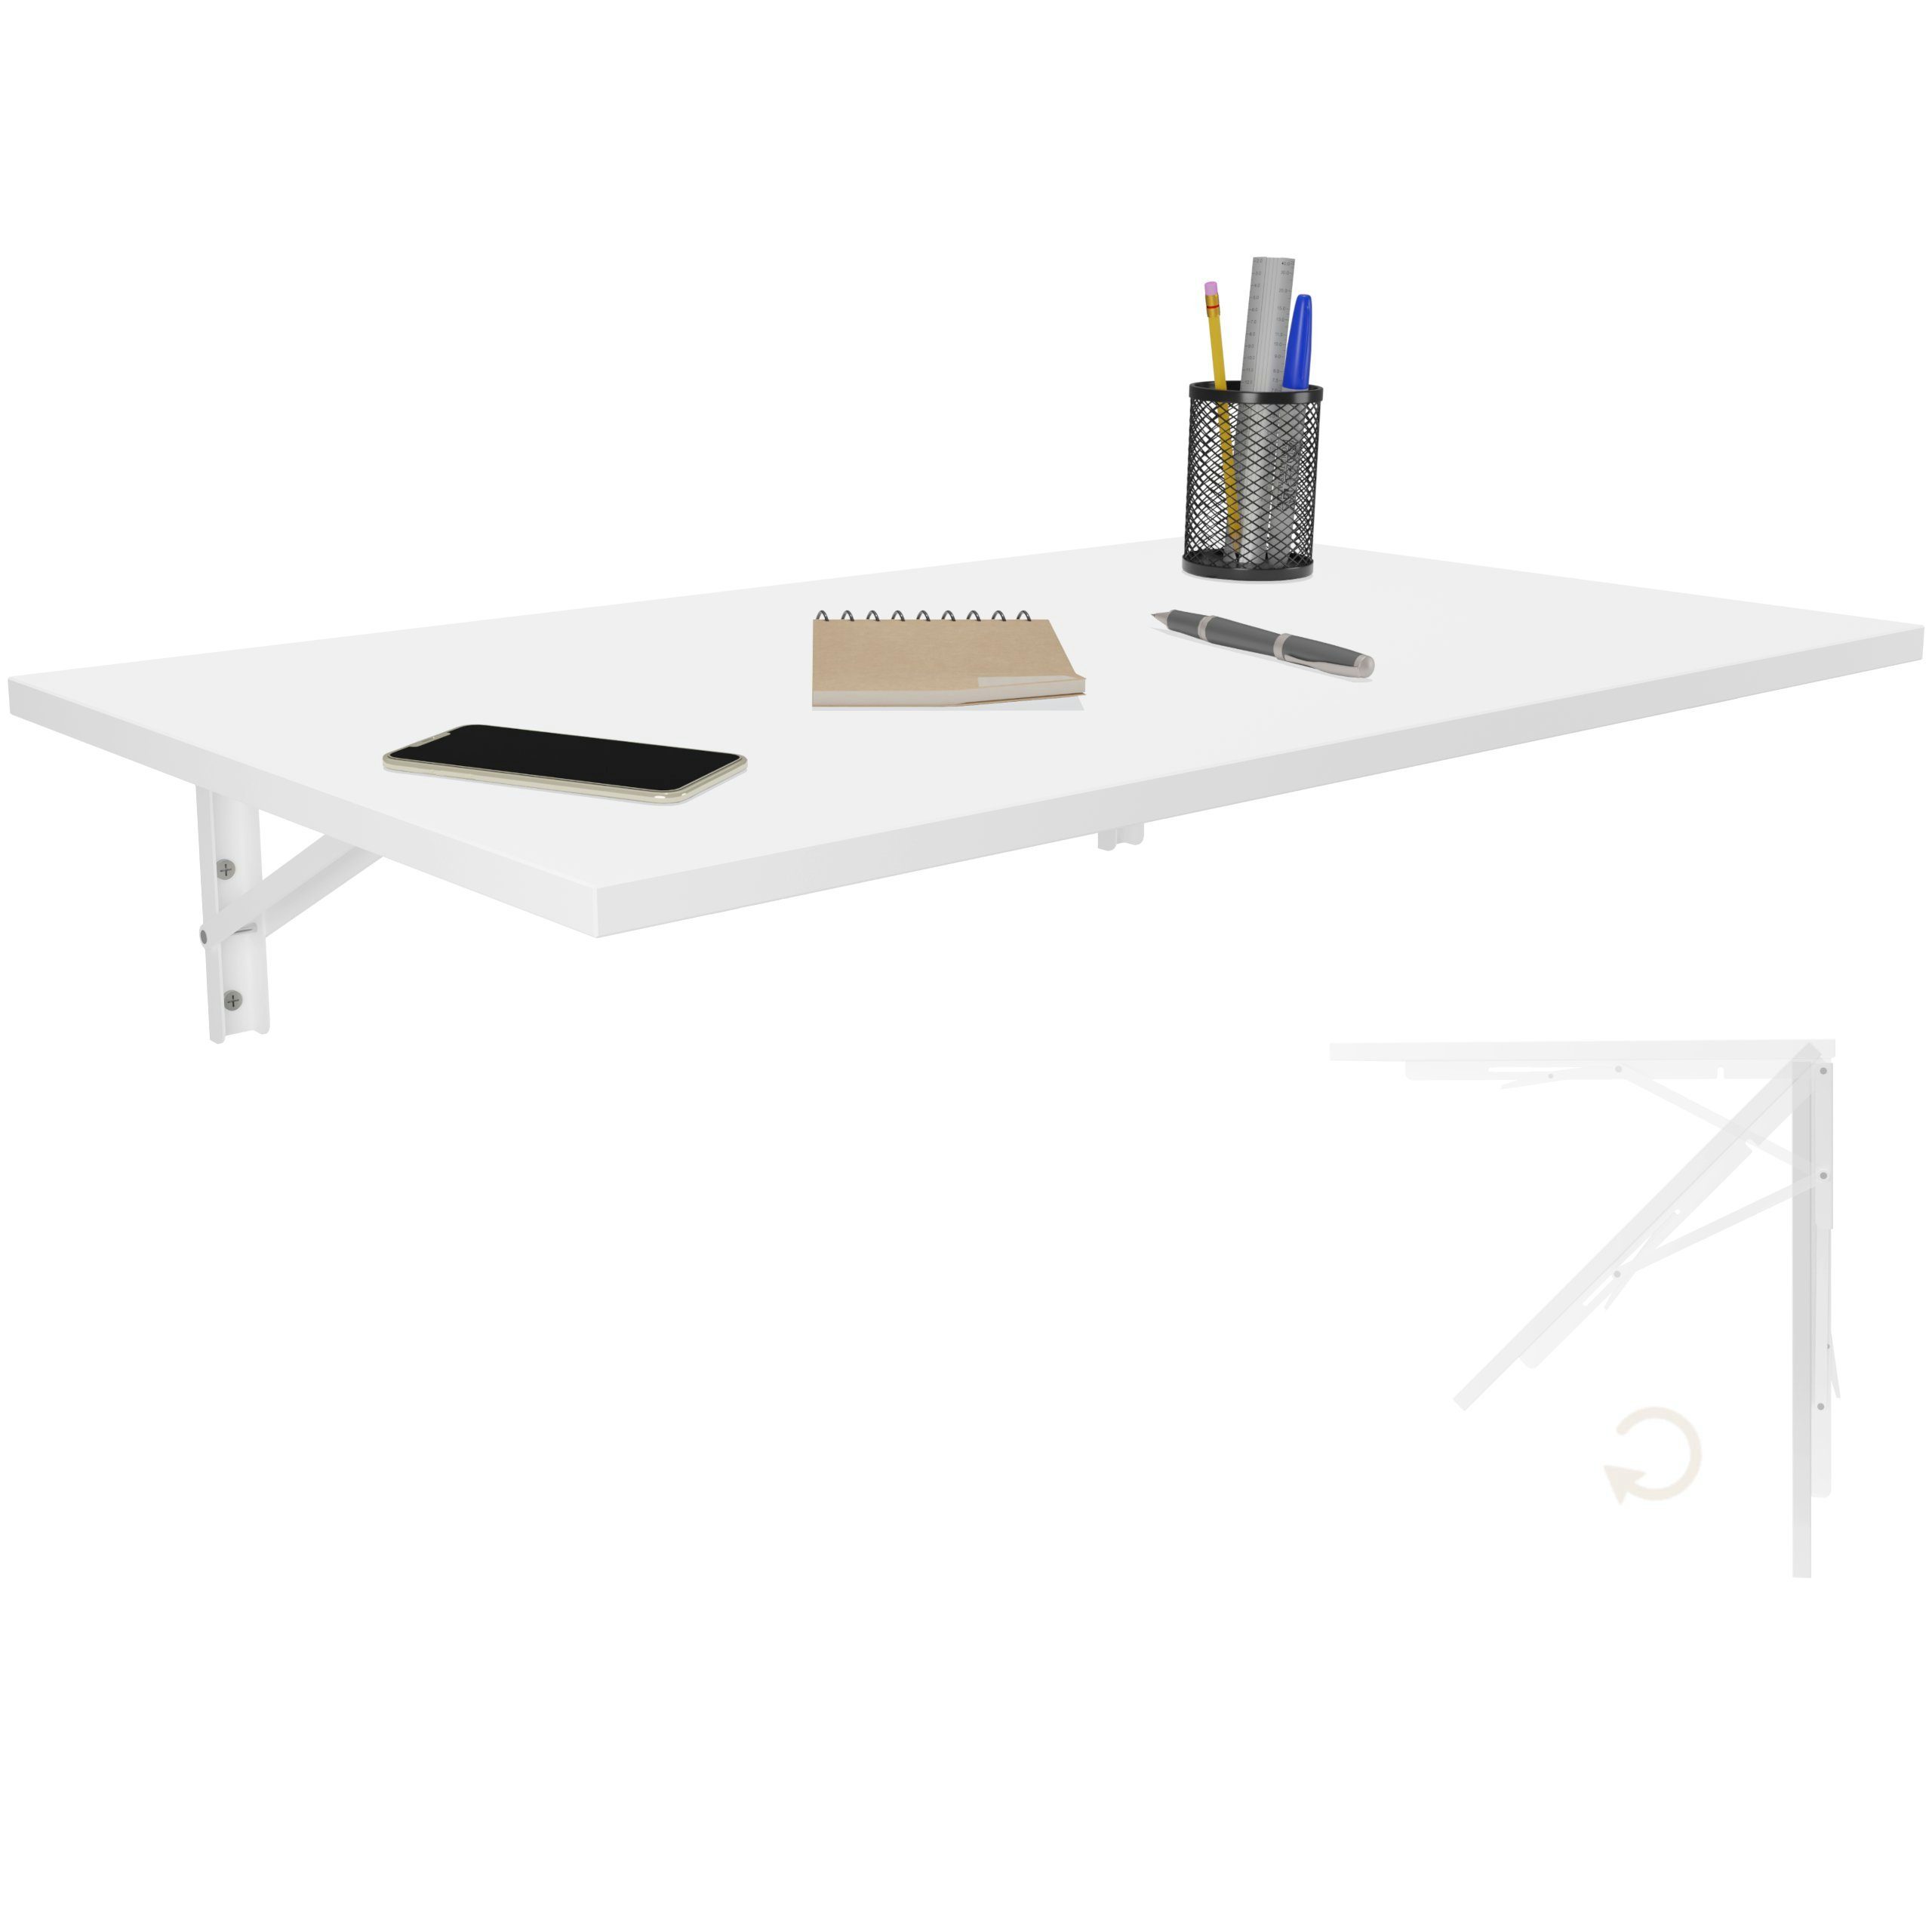 80x50 KDR Wand Küchentisch Wandklapptisch Weiß Esstisch Produktgestaltung Tisch, Schreibtisch Klapptisch